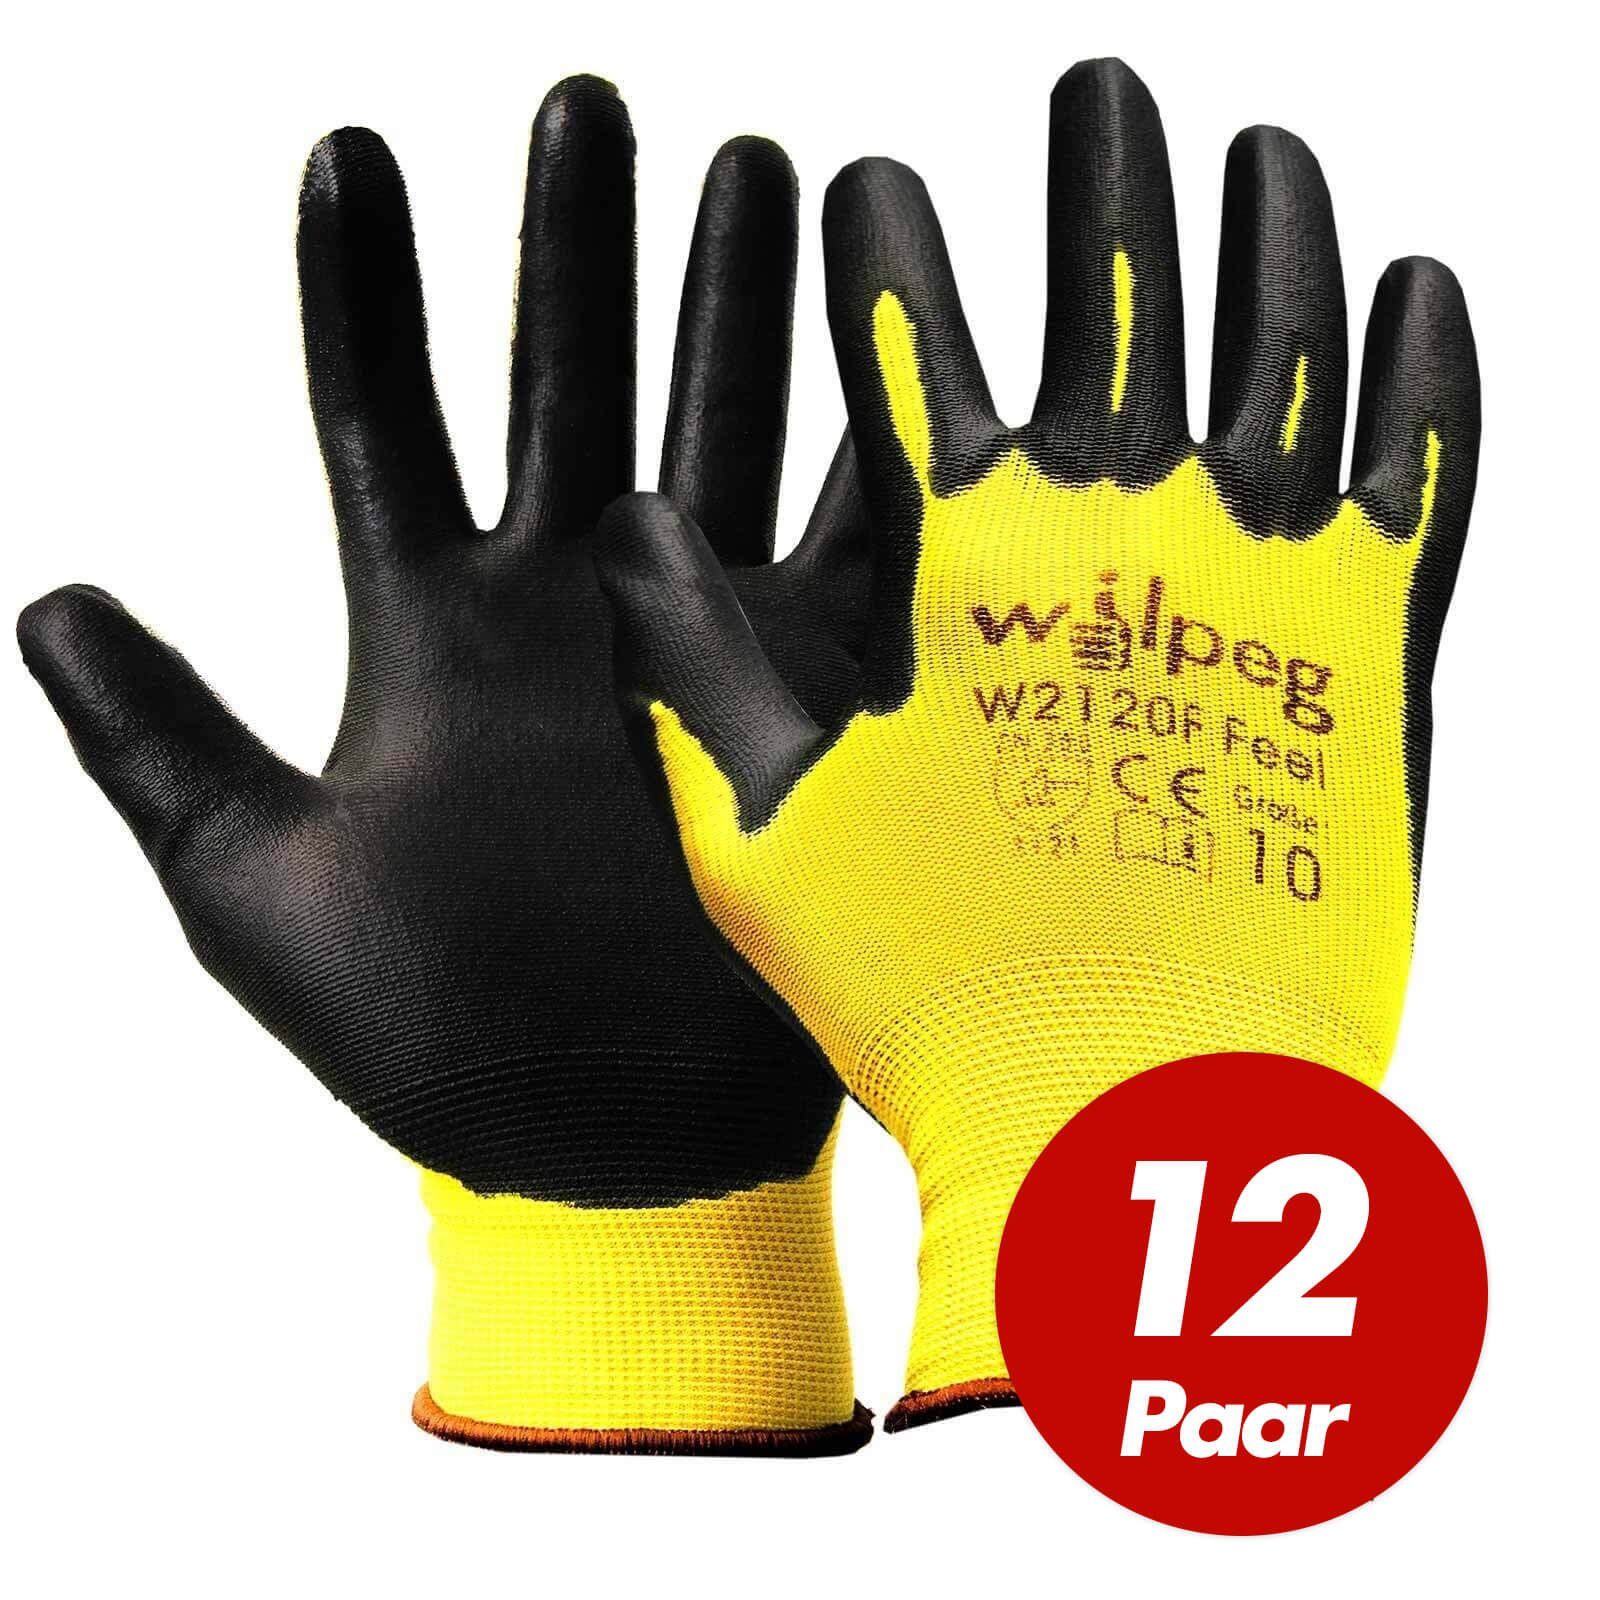 wilpeg® Nitril-Handschuhe WILPEG W2120F Nylon-Strickhandschuhe, PU Feel Handschuhe - 12 Paar (Spar-Set) schwarz/gelb